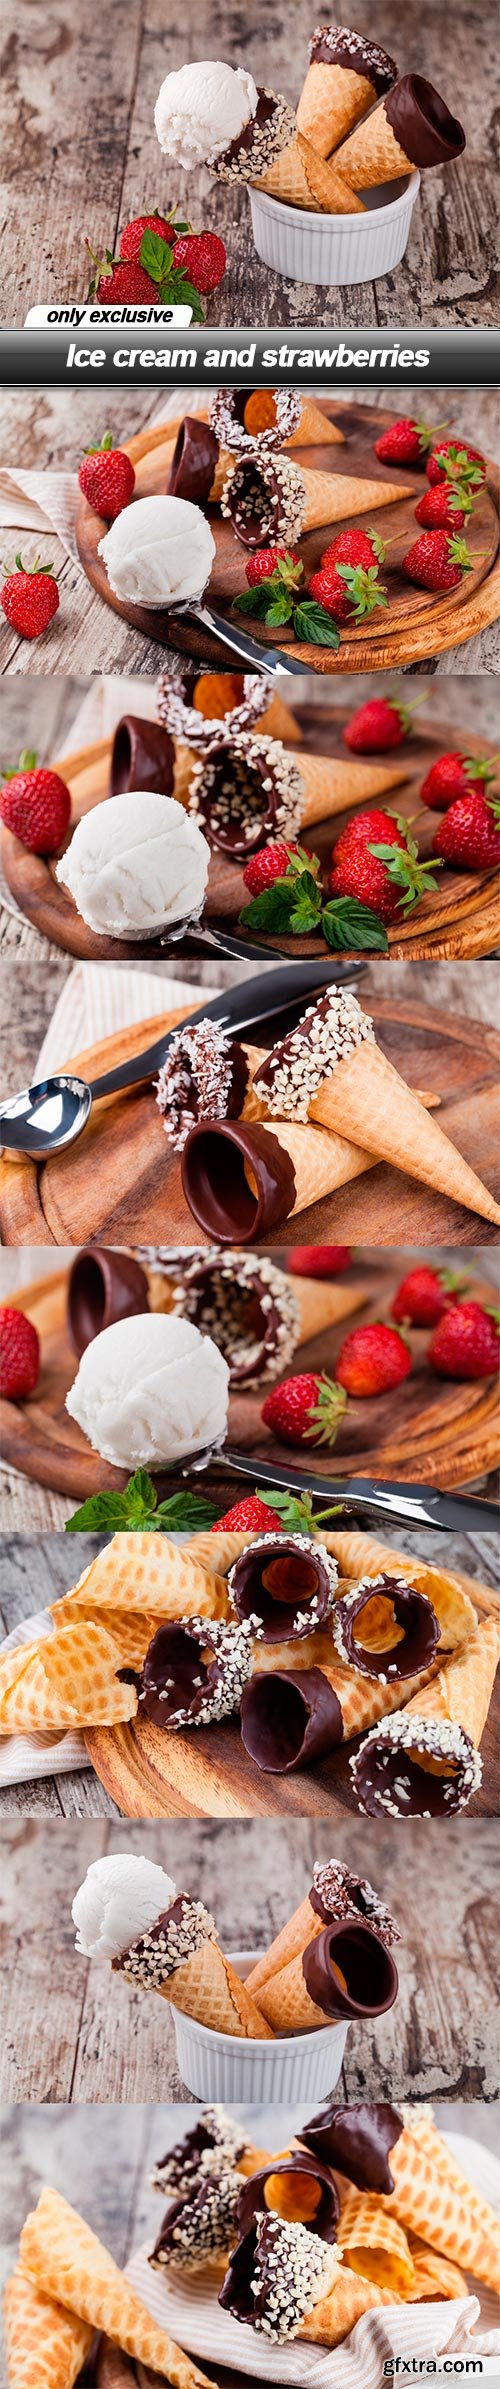 Ice cream and strawberries - 8 UHQ JPEG